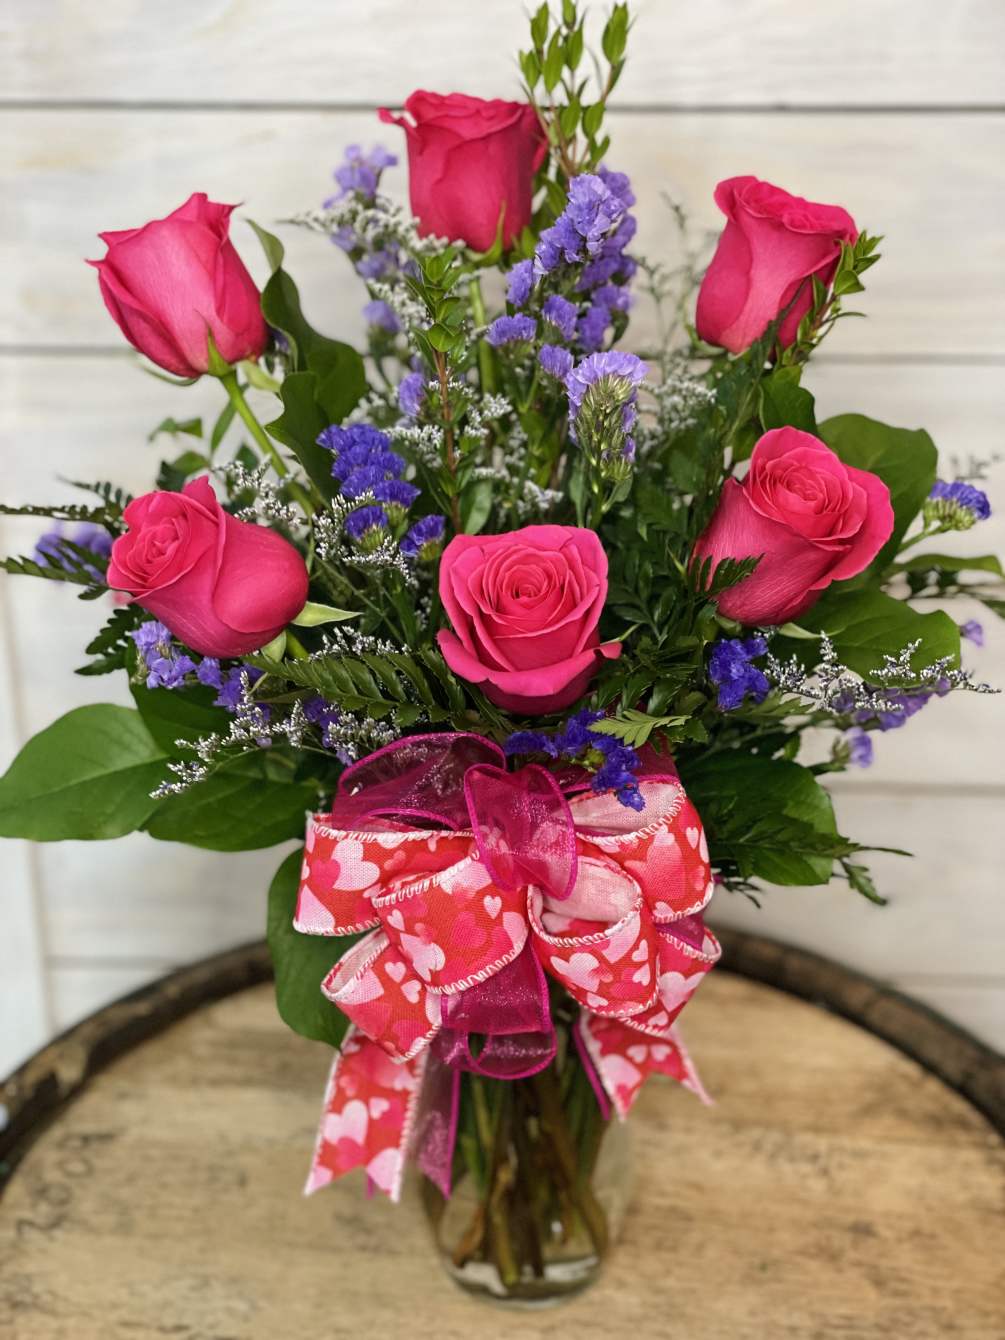 6 hot pink roses with filler flower arranged in a vase. Hot